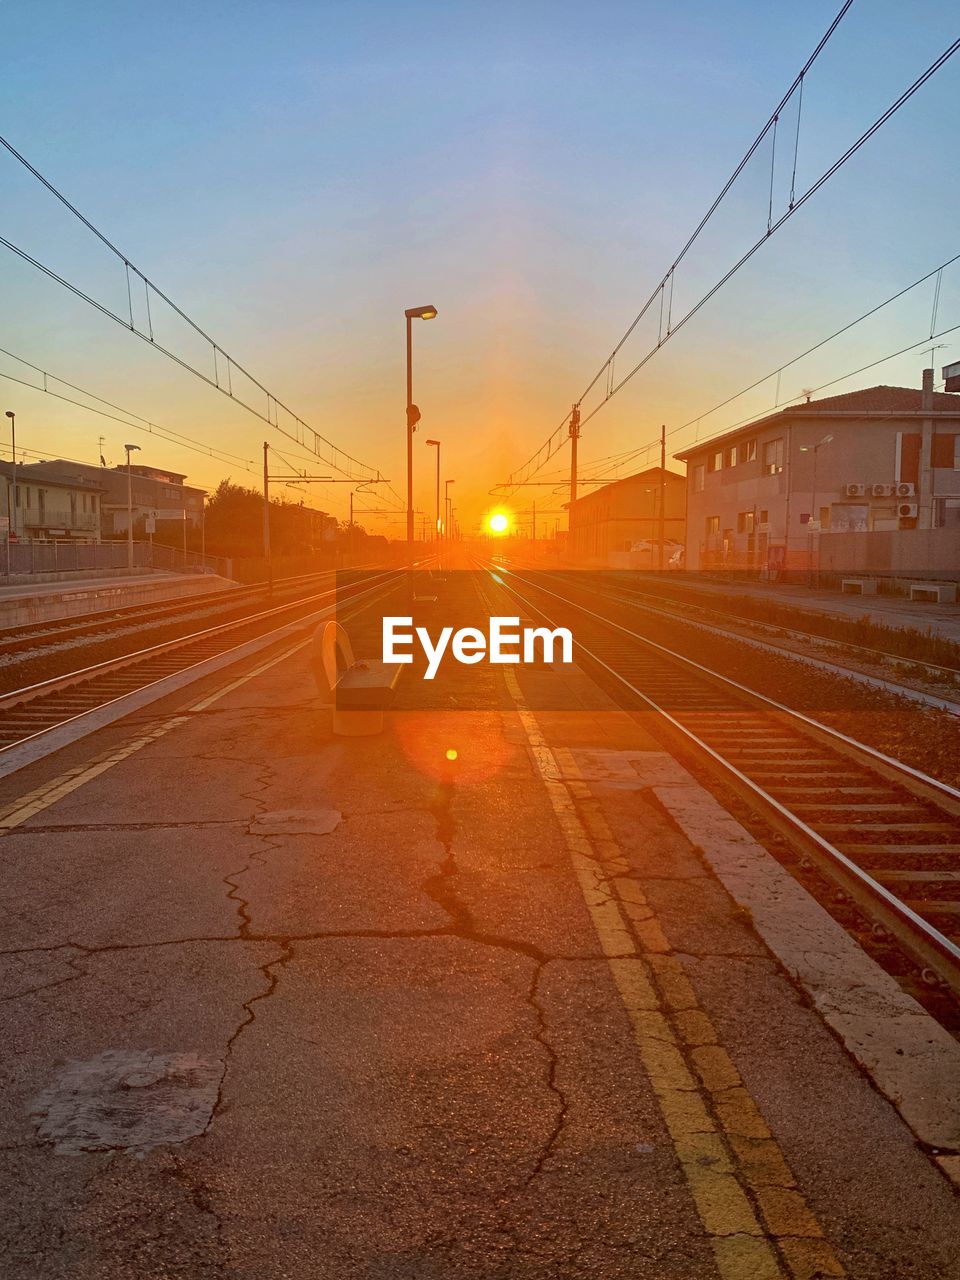 Railroad station platform against sky during sunset